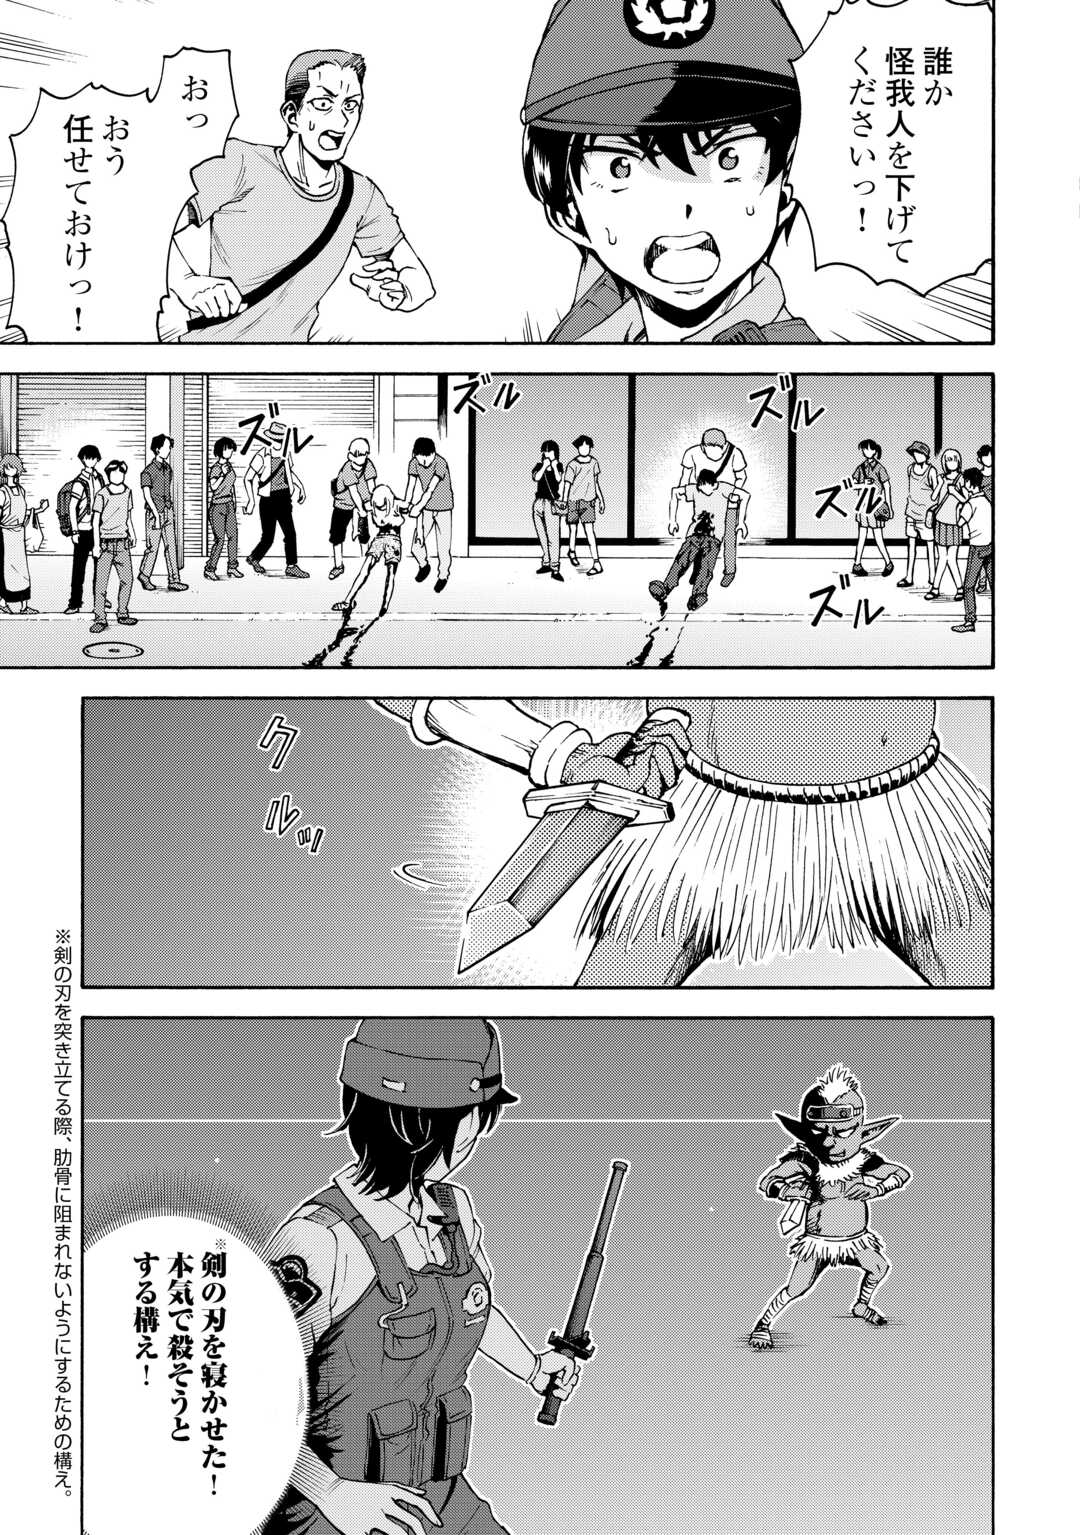 ゲート0 -zero- 自衛隊 銀座にて、斯く戦えり 第2話 - Page 33